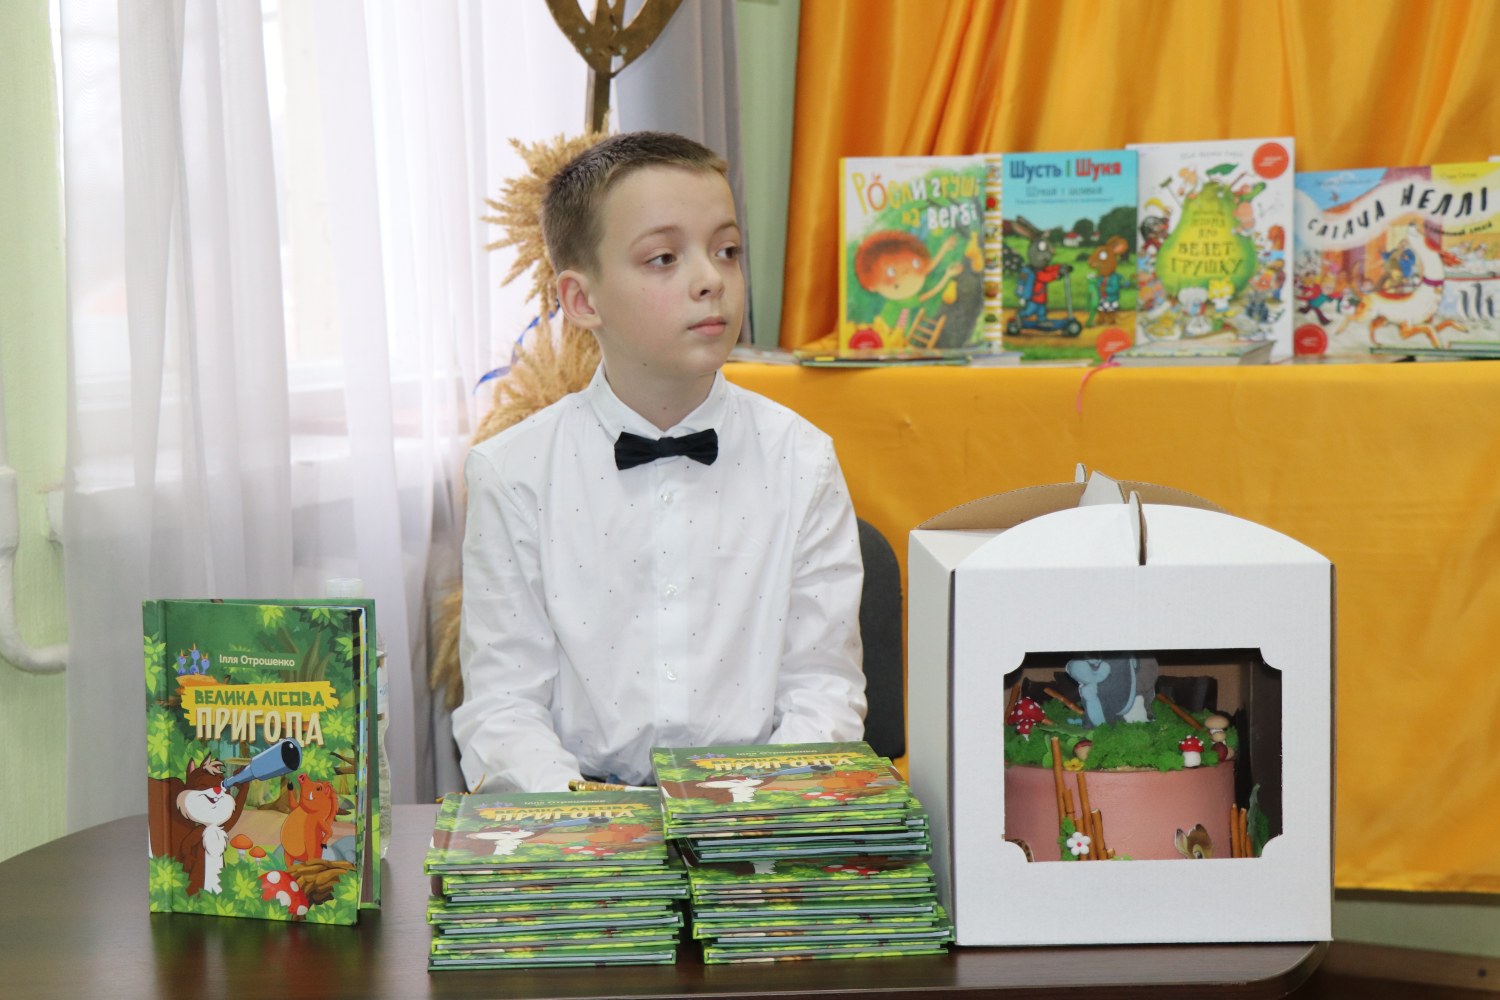 Частину накладу книжки Іллі Отрошенка зможуть прочитати діти, які лікуються в Охматиді. Фото з Сумського інформаційного порталу